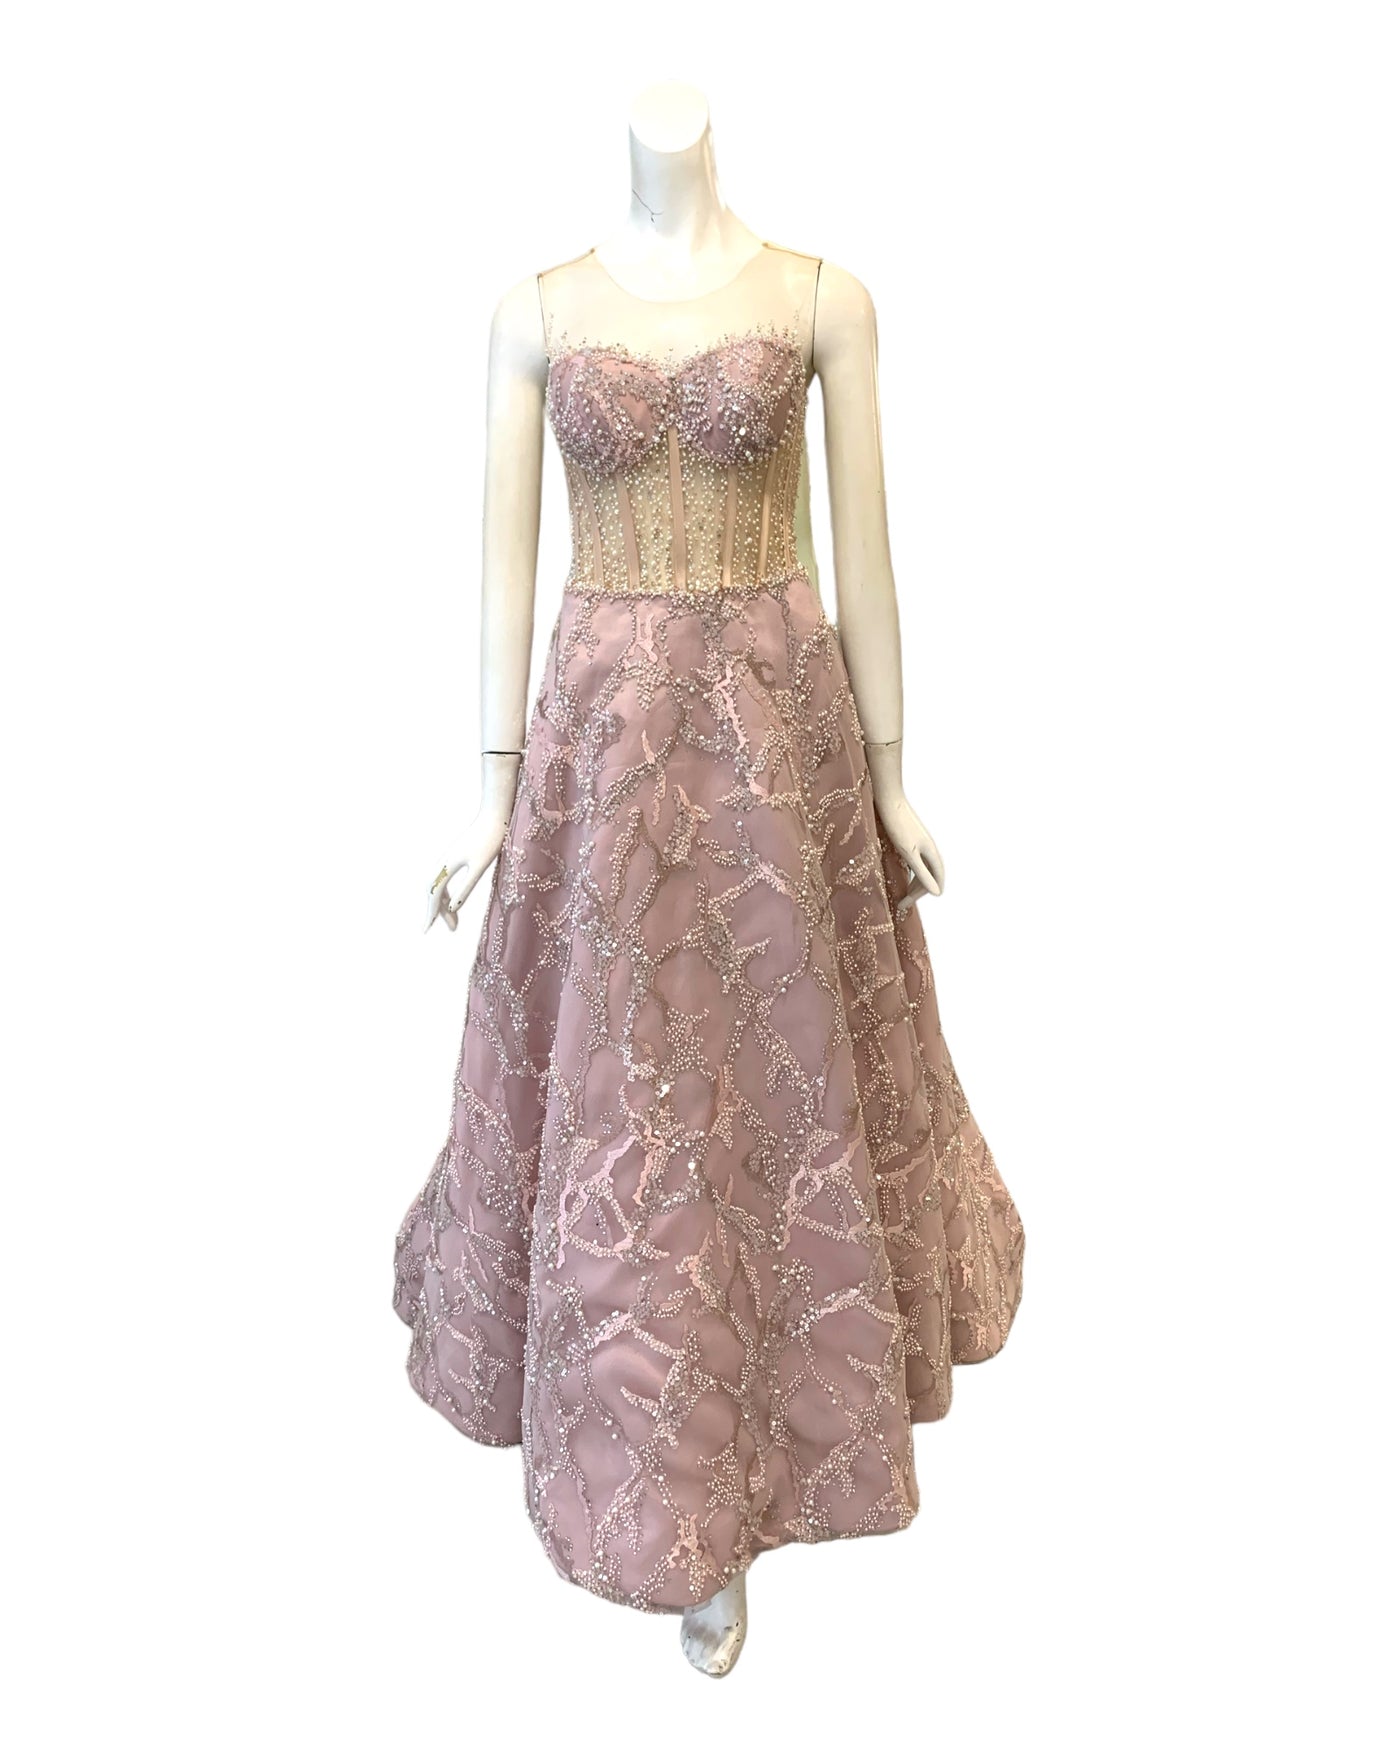 Buy : Winda Halomoan - Dusty Pink Bustier Gown